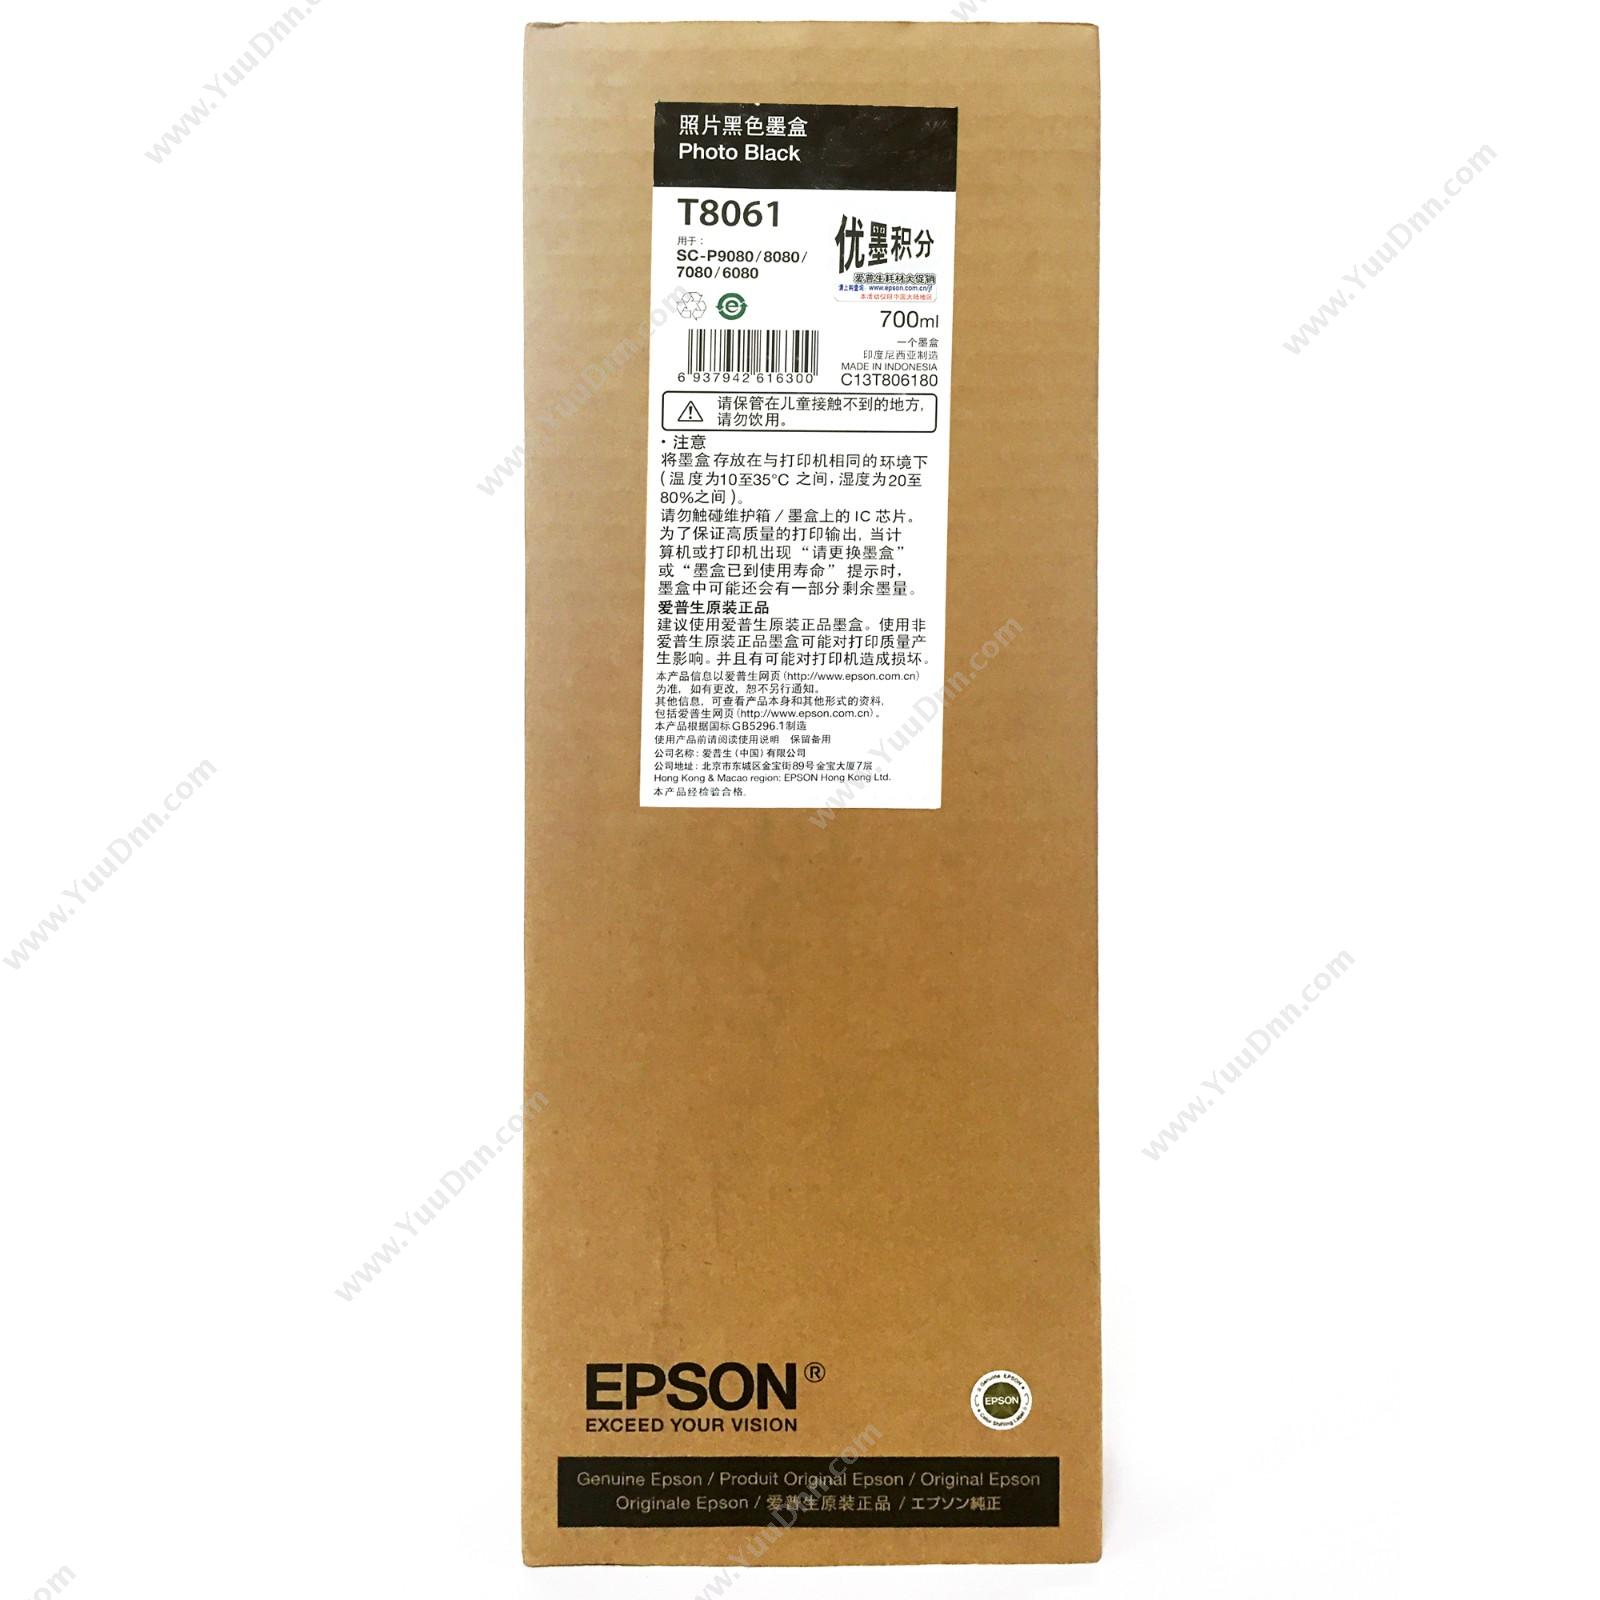 爱普生 Epson P9080照片黑墨700ml（C13T806180） 墨粉/墨粉盒